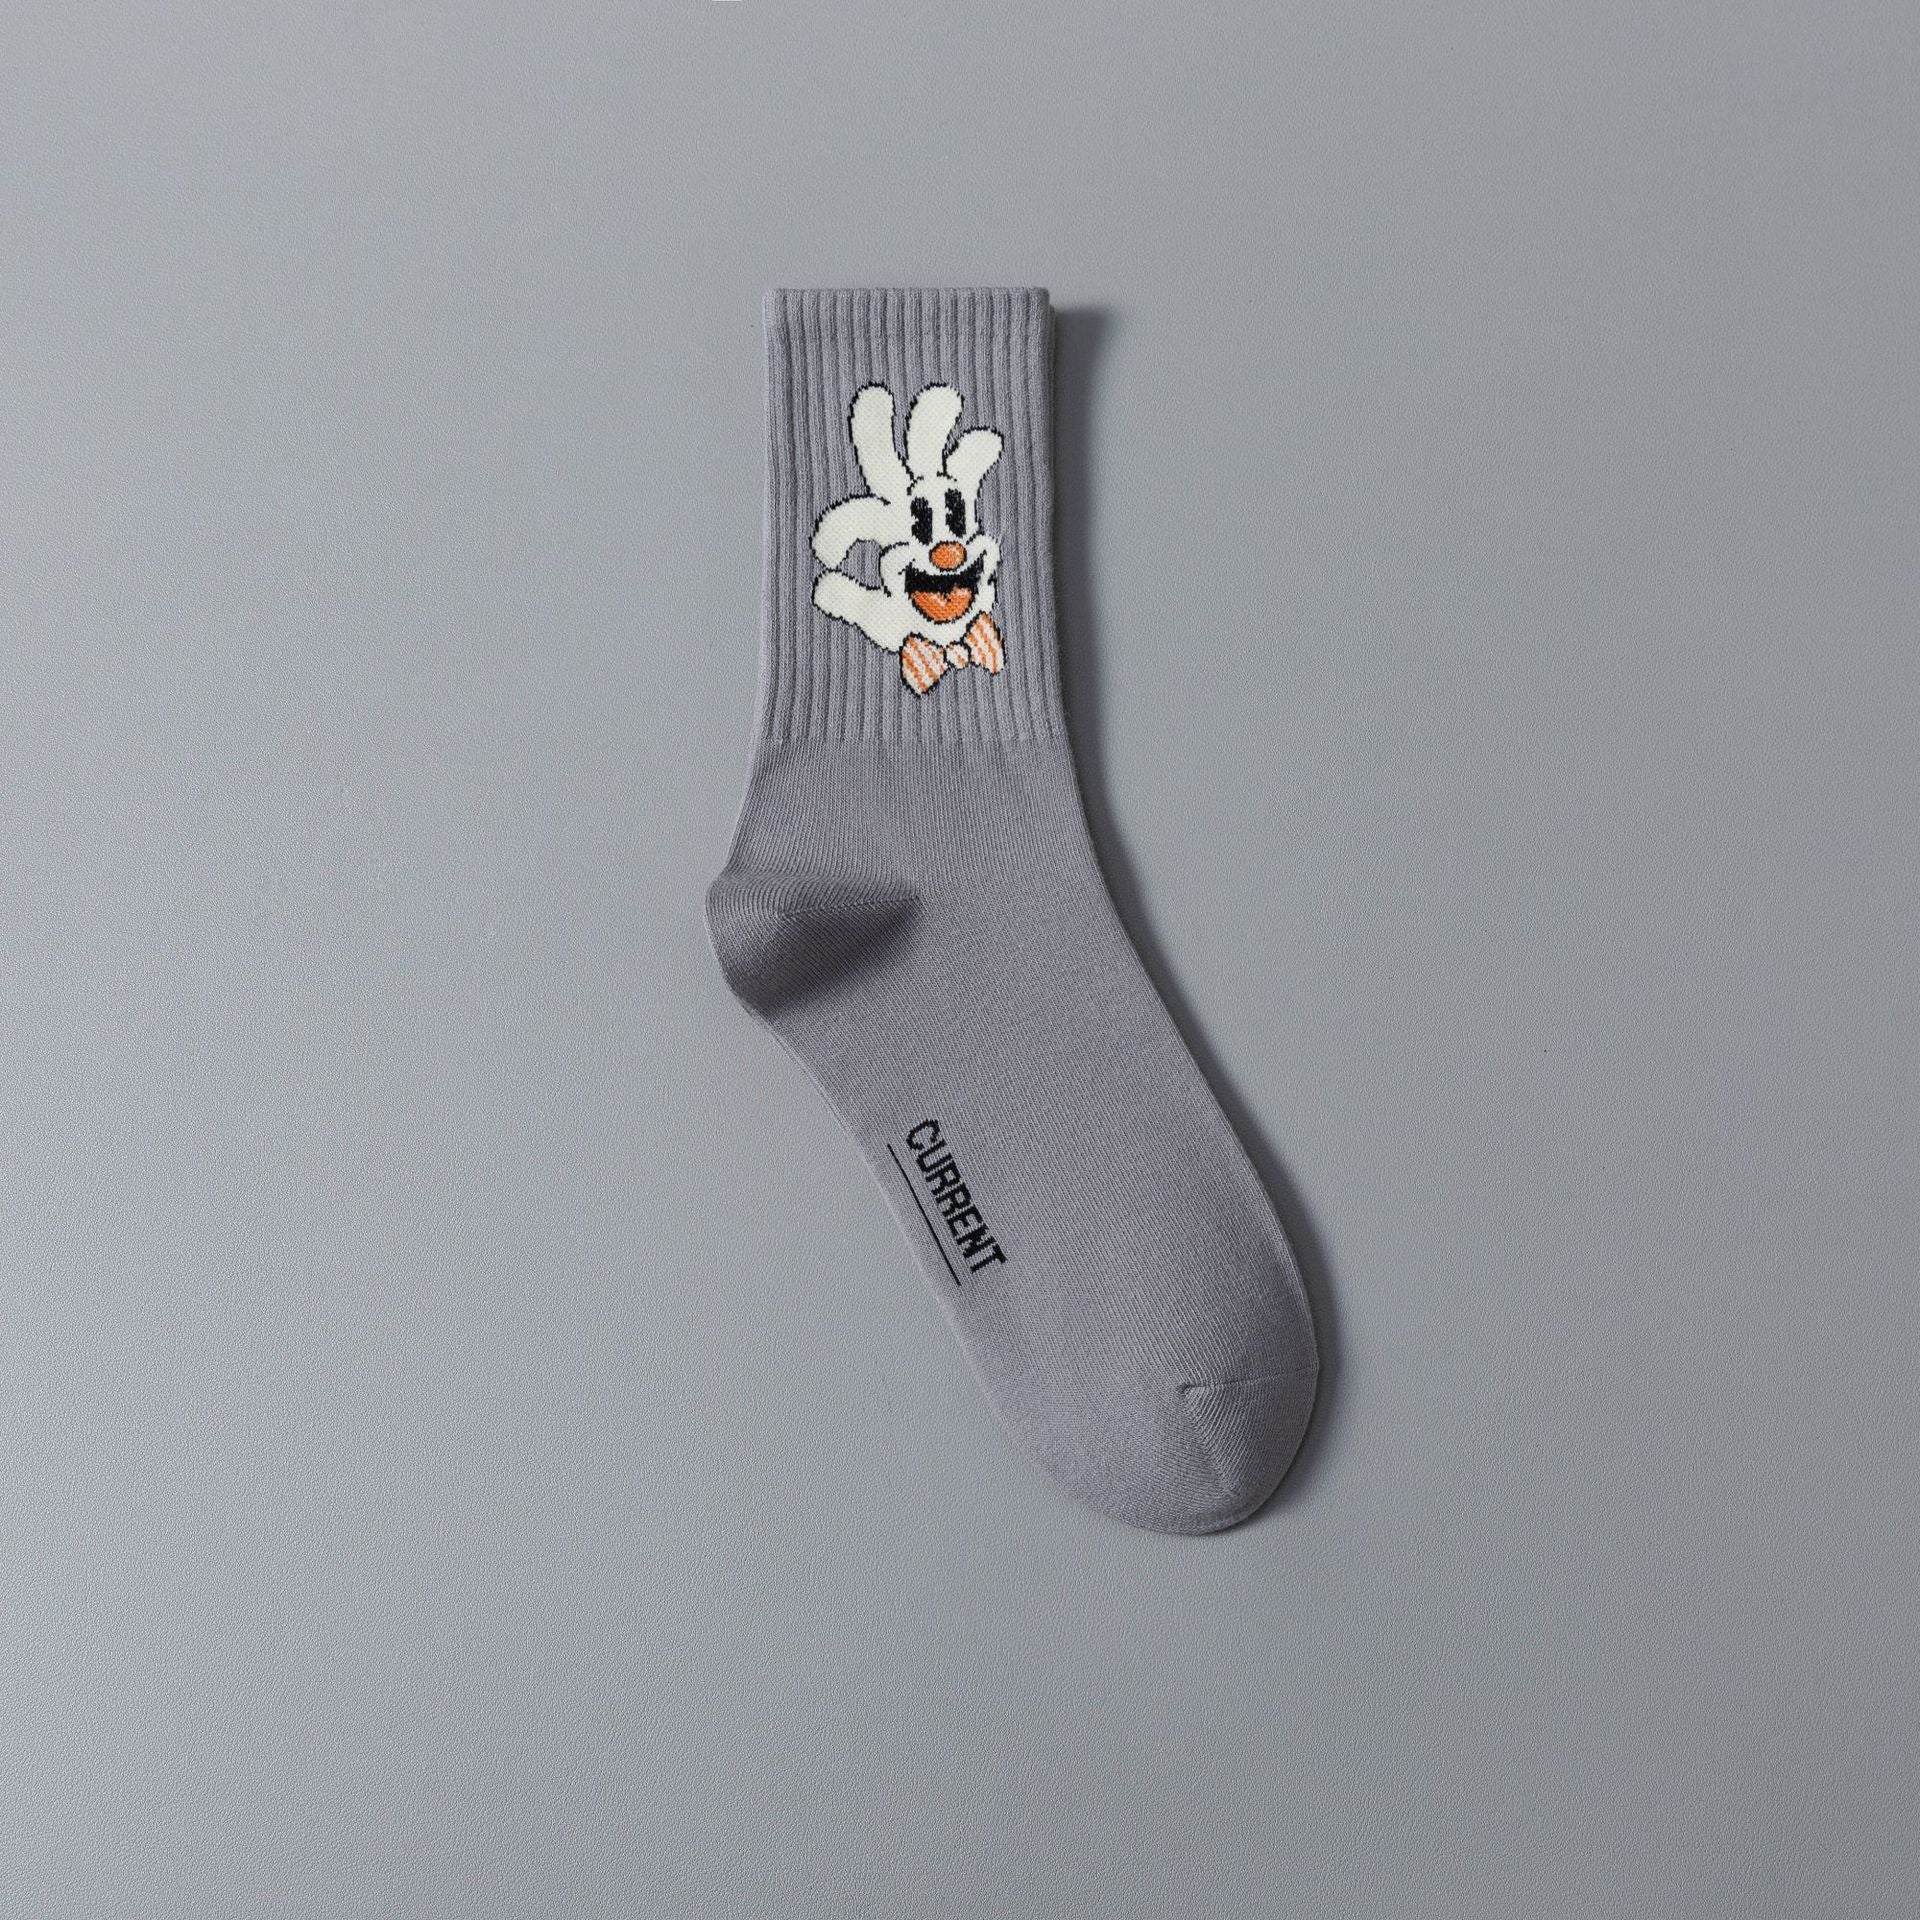 Retro Novelty Socks